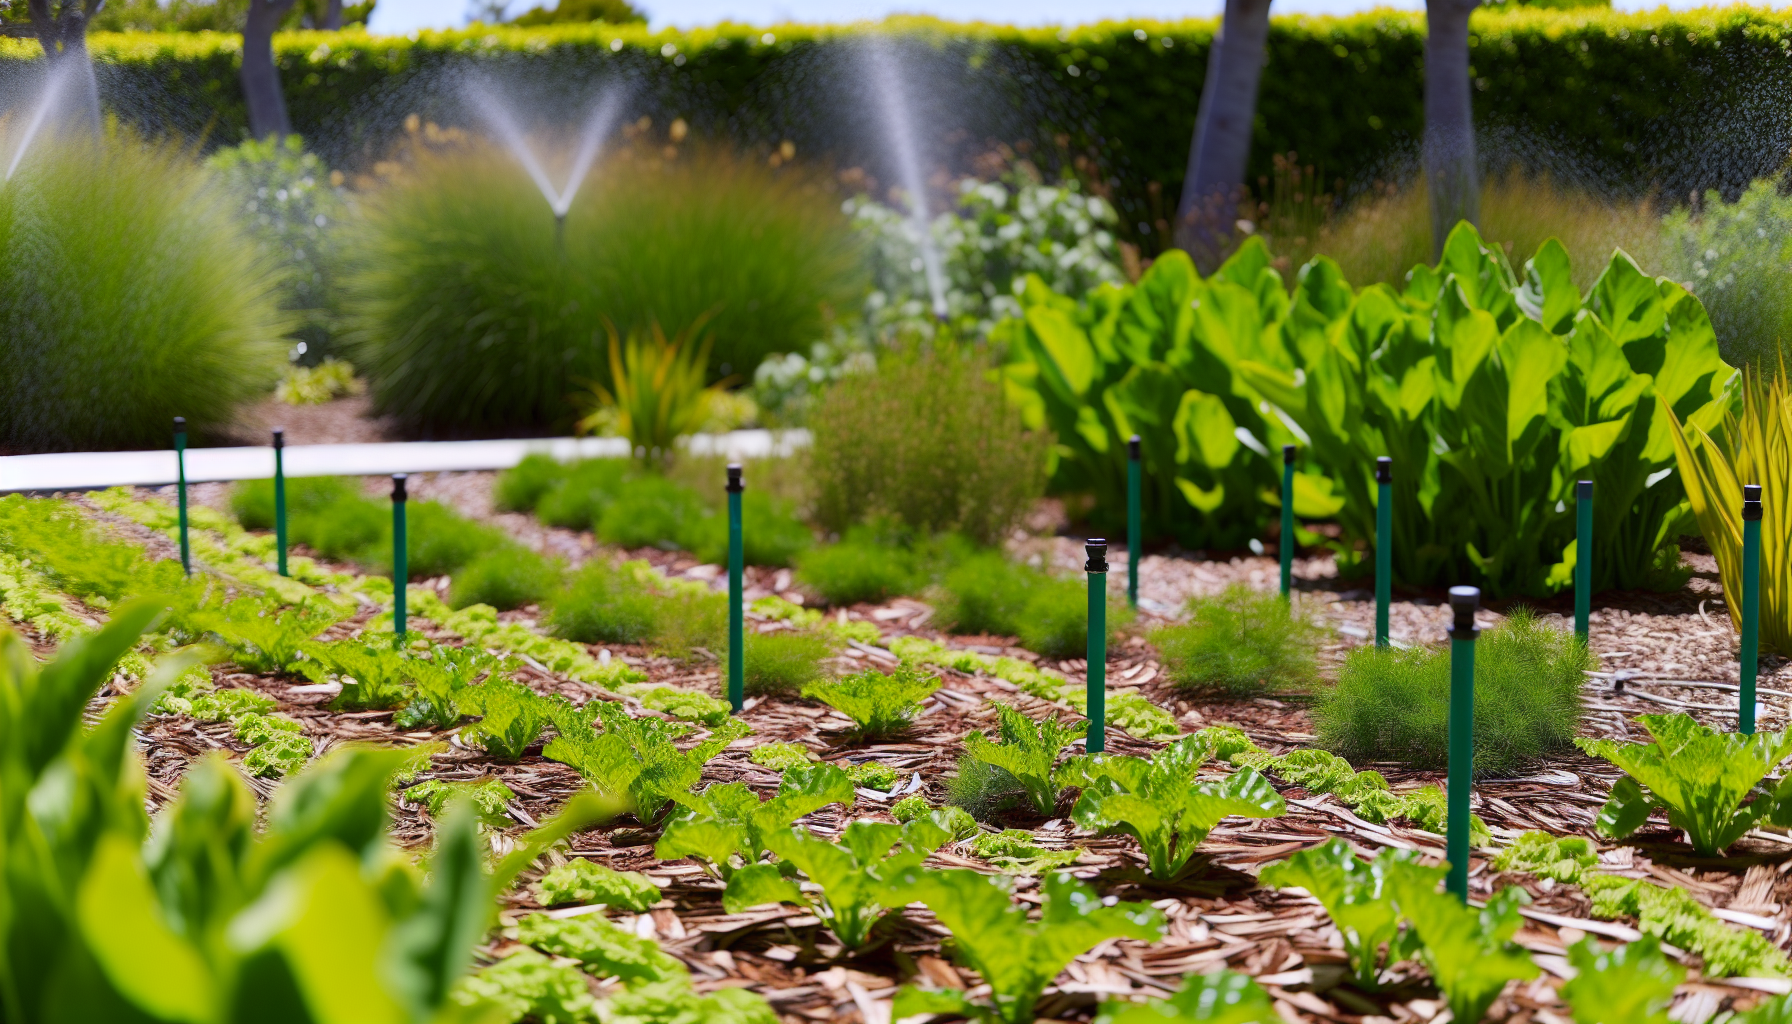 Mulched garden with water-efficient irrigation